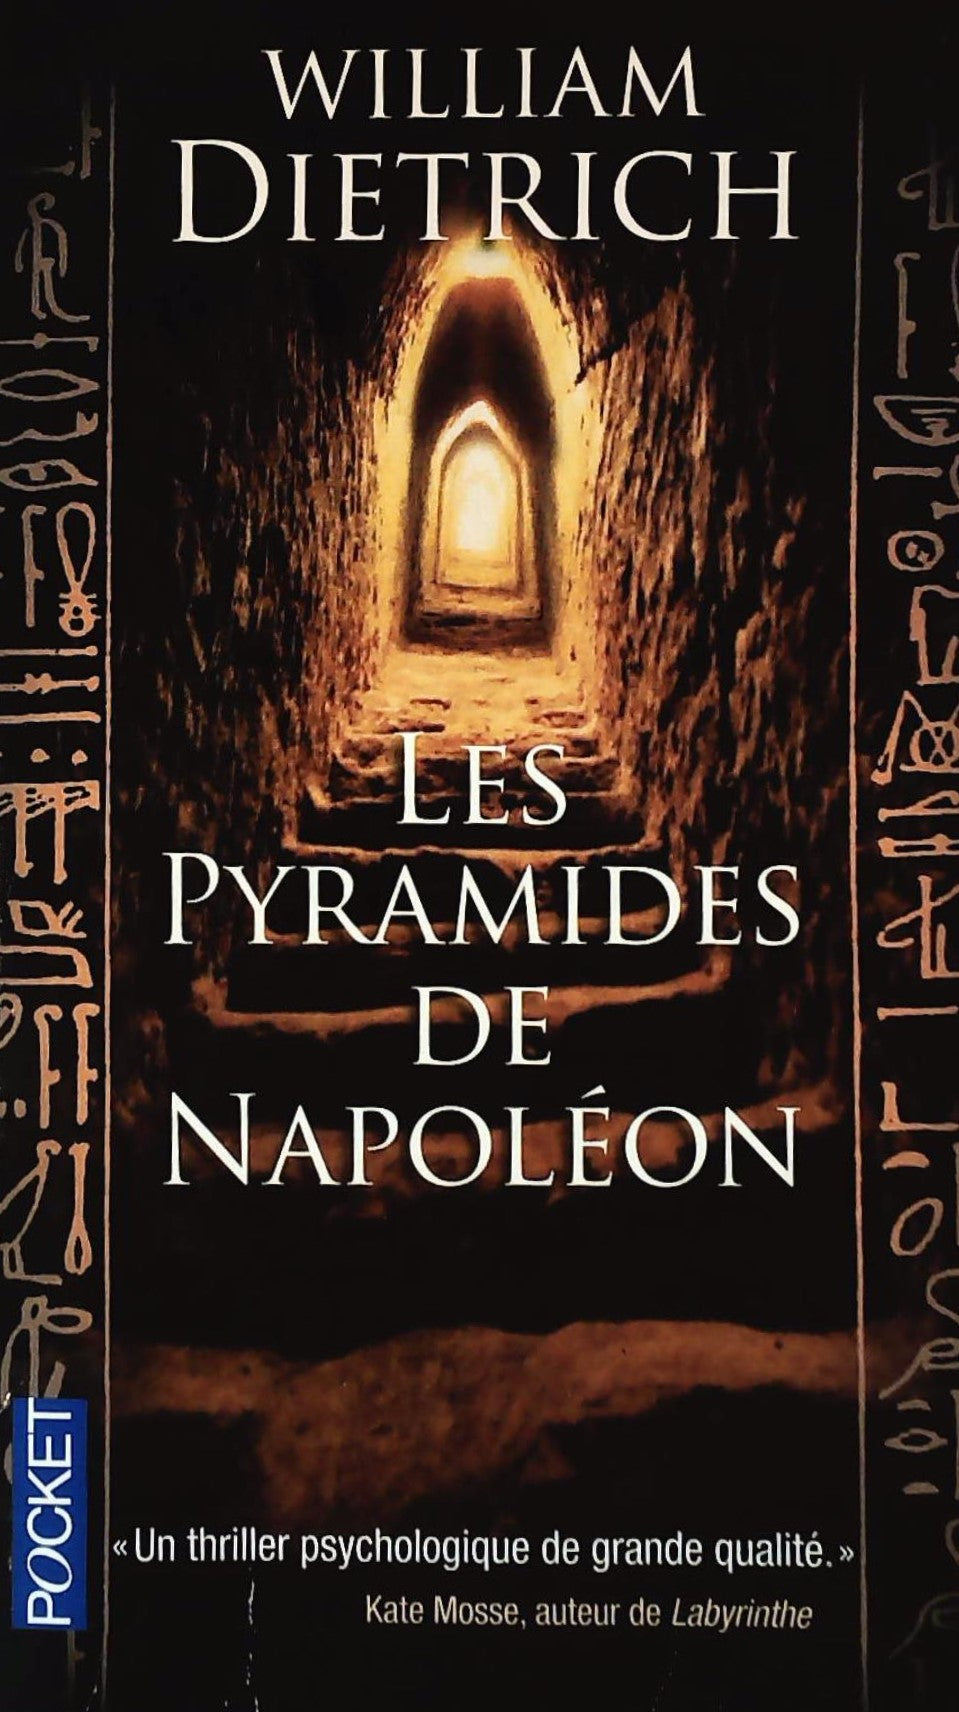 Livre ISBN 2266194291 Les pyramides de Napoléon (William Dietrich)